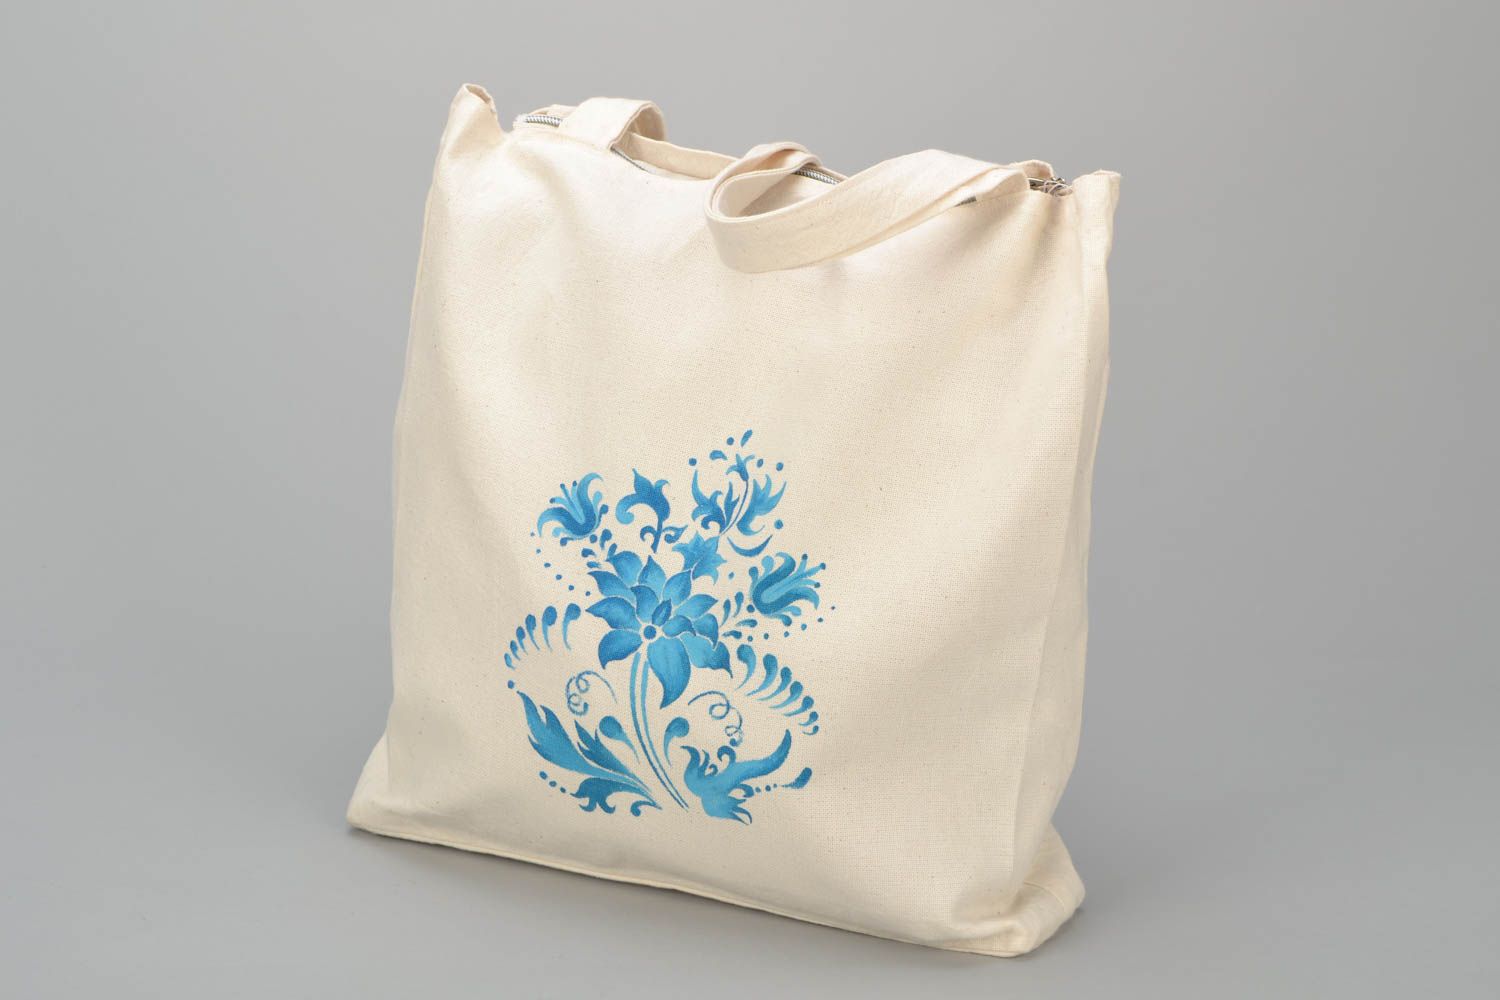 Textil Handtasche in Weiß mit blauen Blumen foto 1